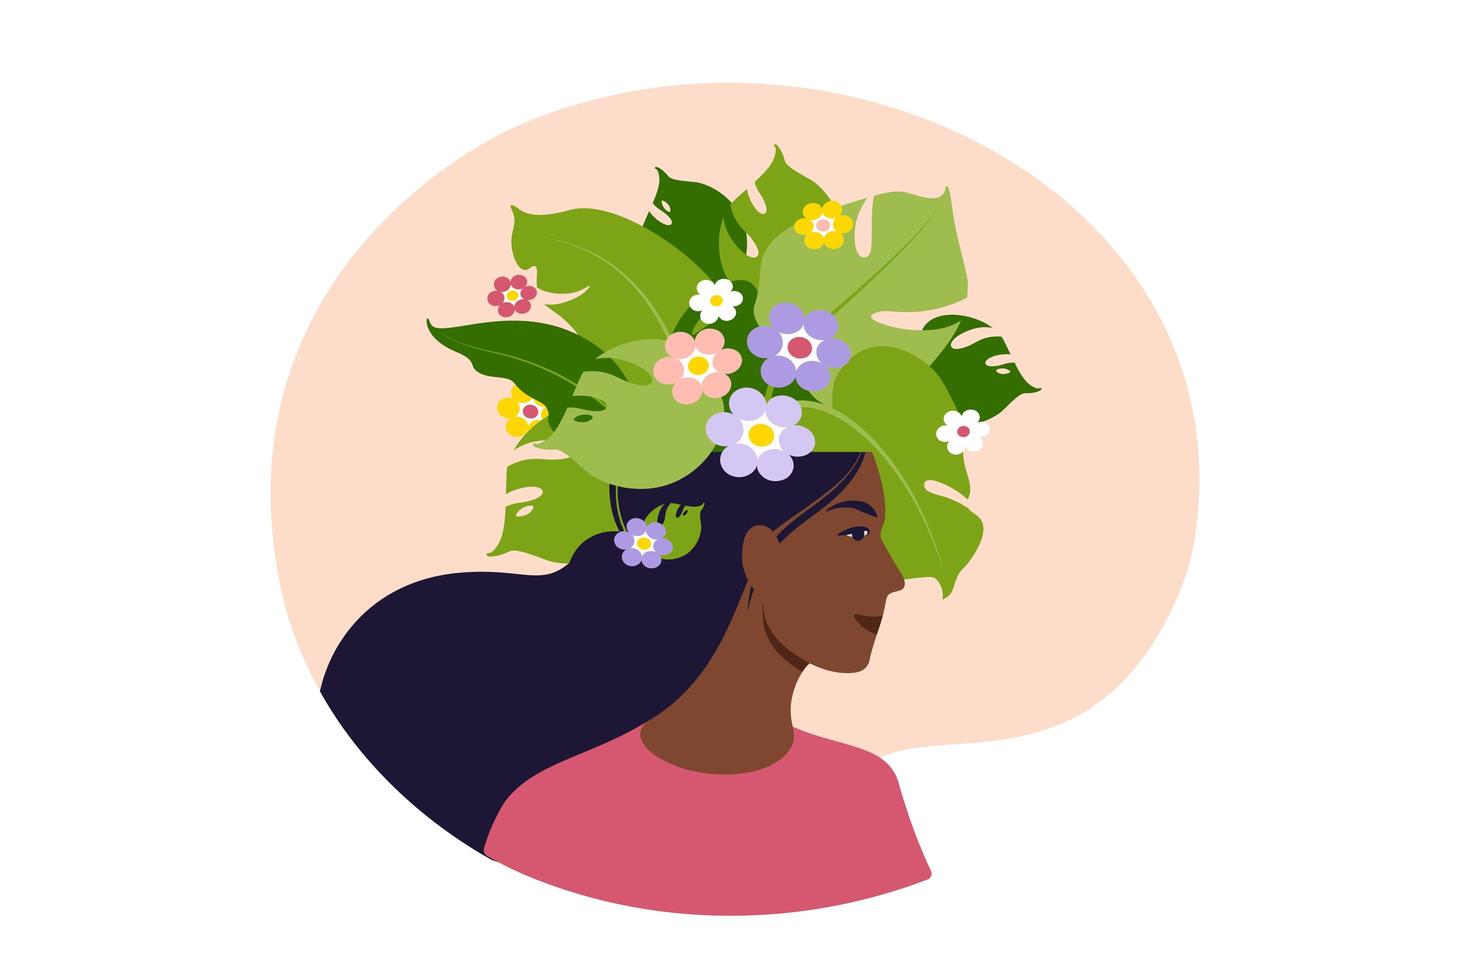 saúde mental, felicidade, conceito de harmonia. feliz cabeça feminina africana com flores dentro. atenção plena, pensamento positivo, ideia de autocuidado. ilustração vetorial. apartamento. vetor